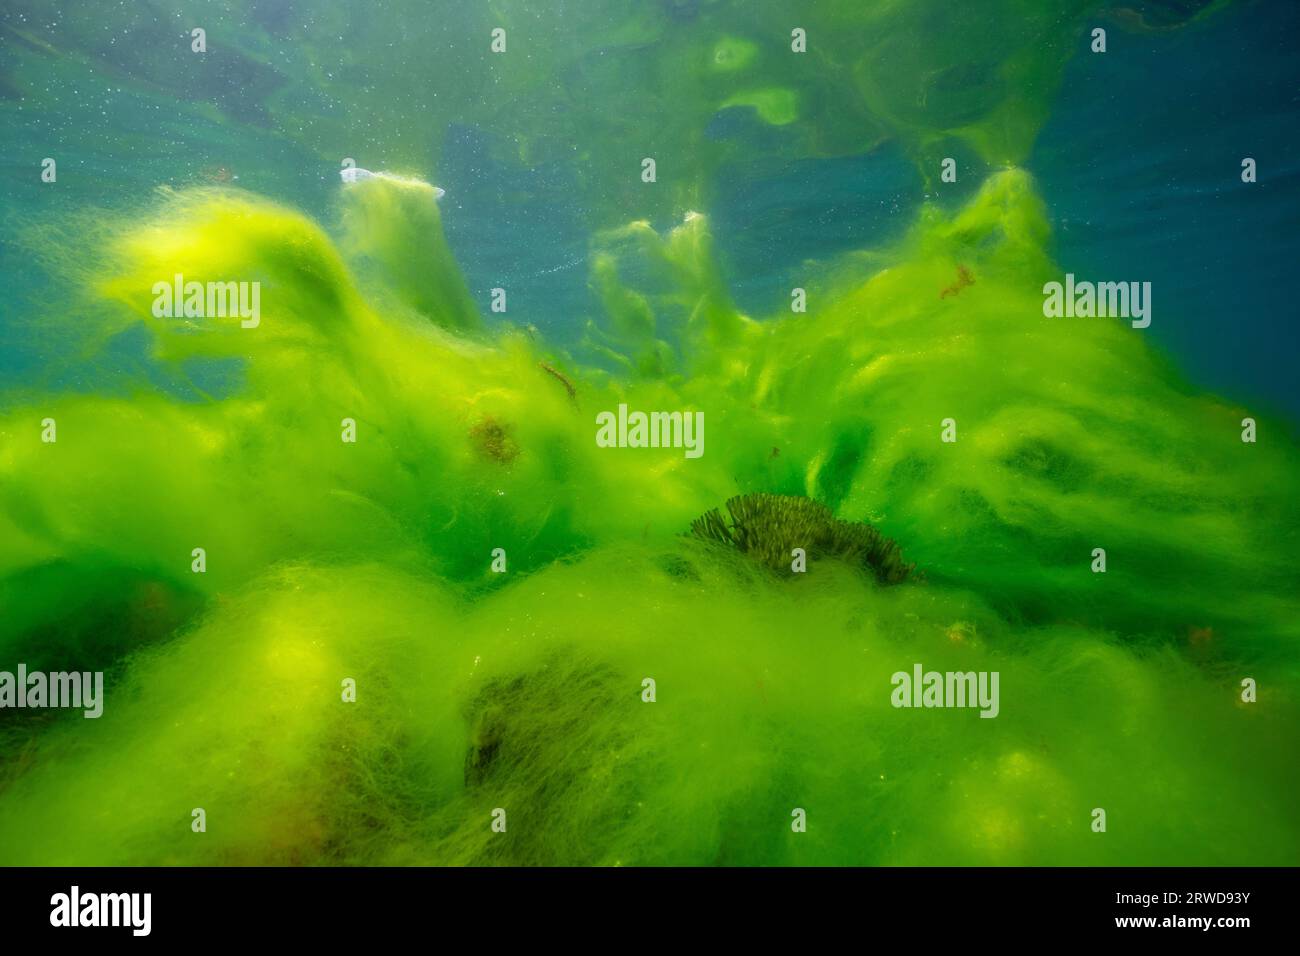 Floraison d'algues sous l'eau, algues filamenteuses dans l'océan Atlantique, scène naturelle, Espagne, Galice, Rias Baixas Banque D'Images